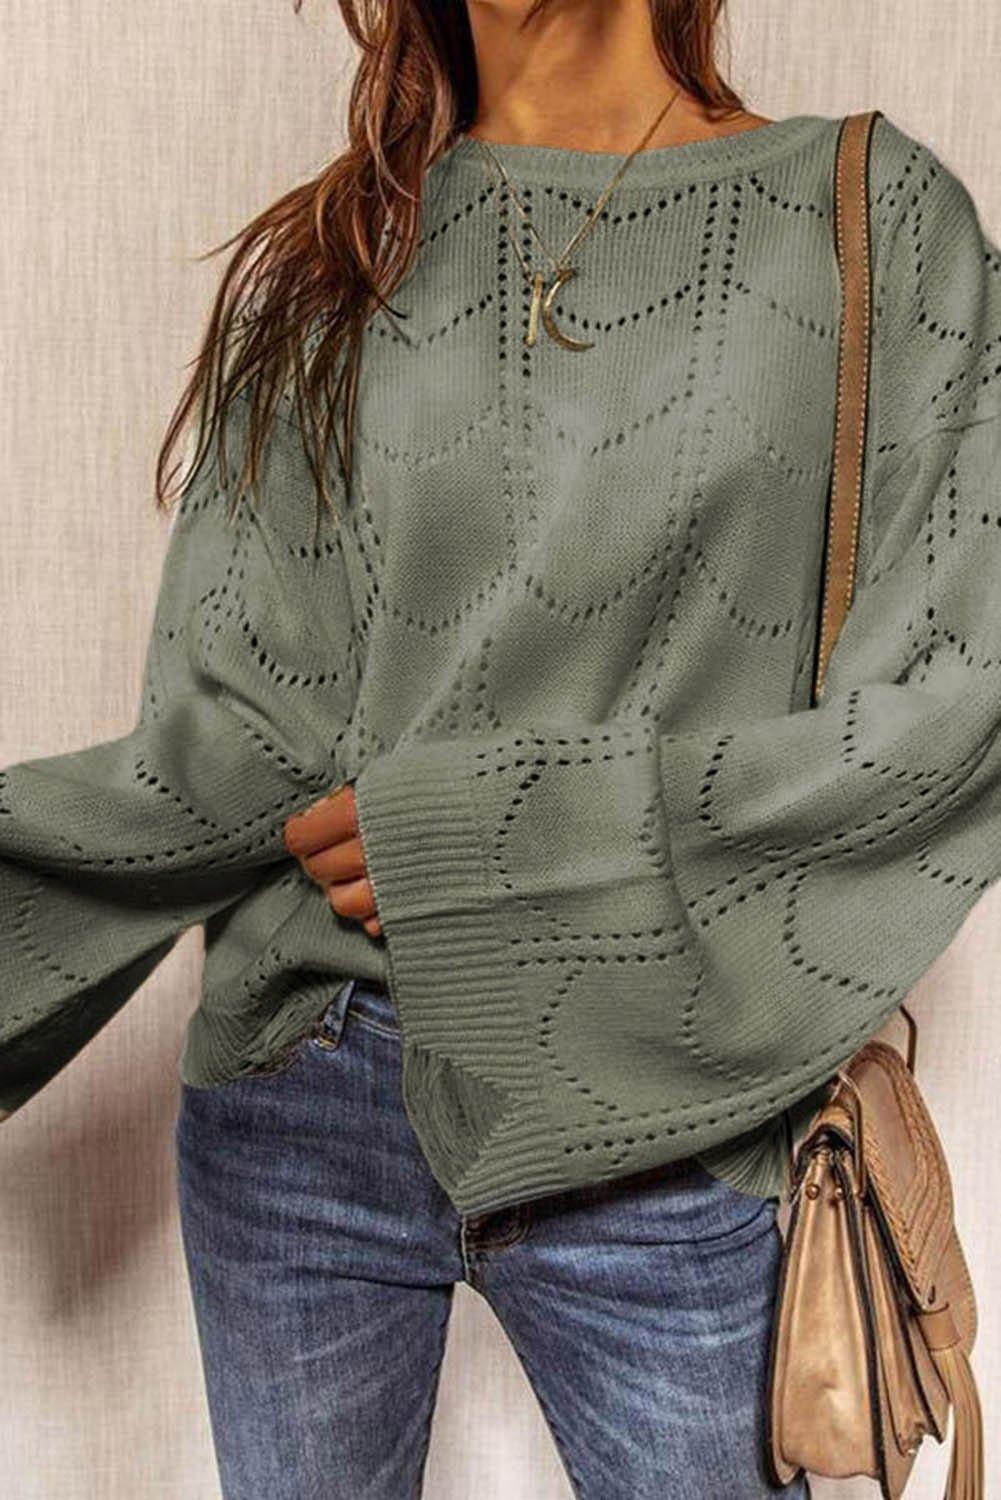 Flare Sleeve Texture Knit Sweater - L & M Kee, LLC